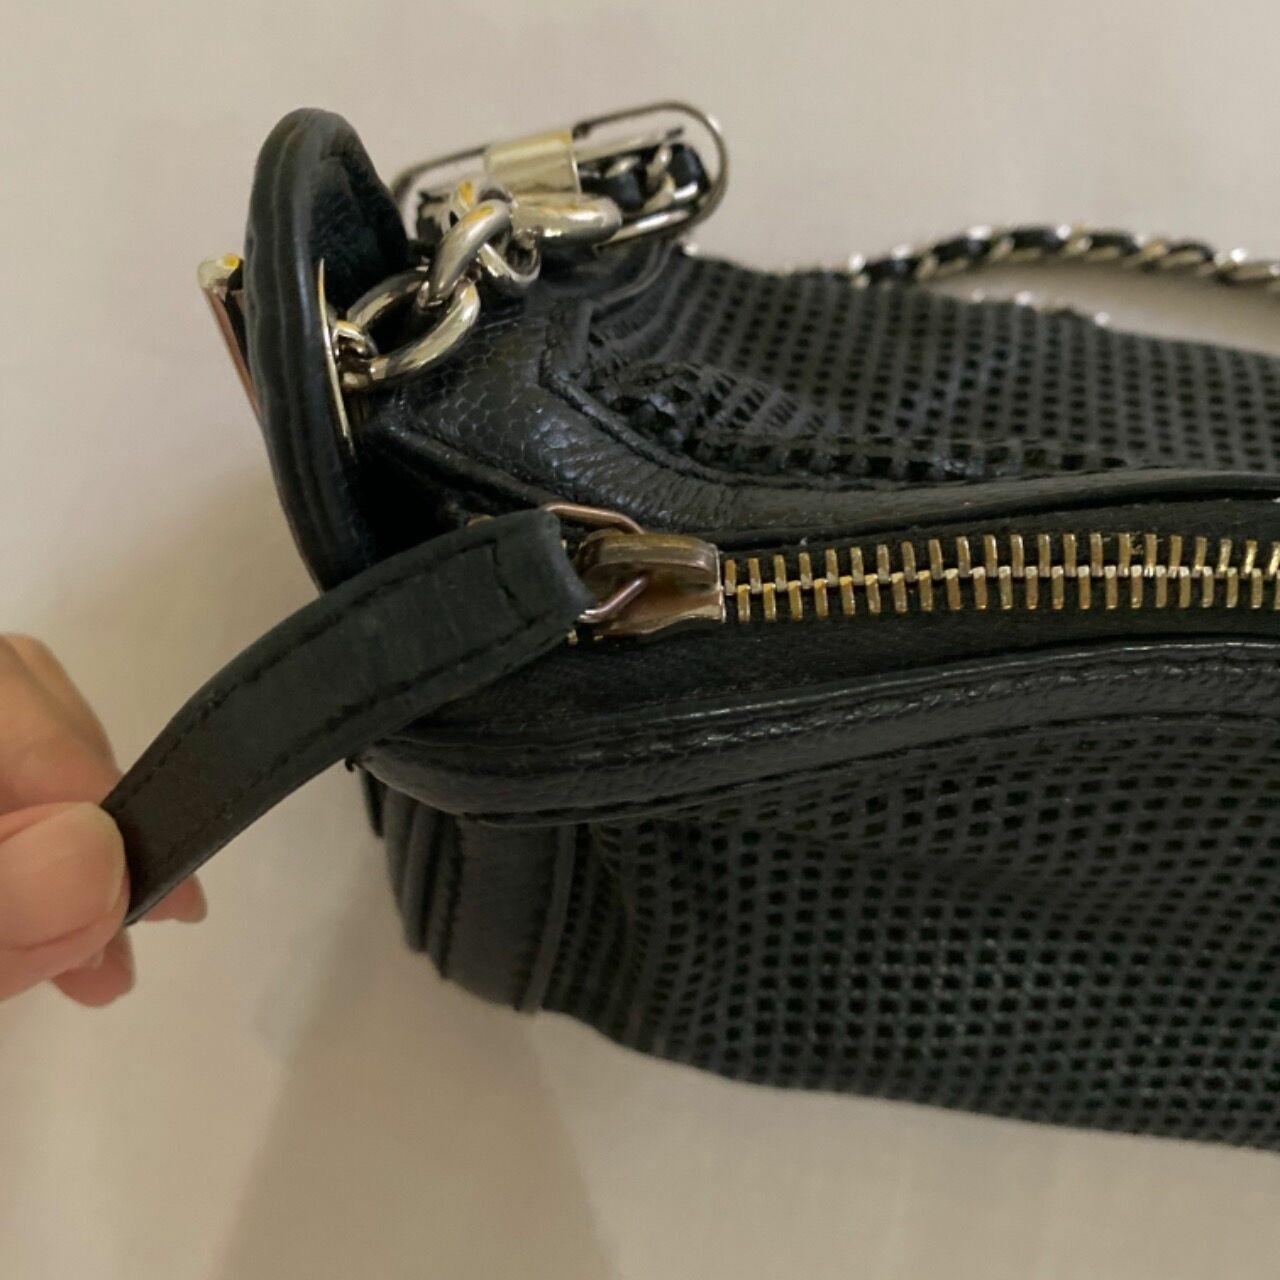 Chanel Vintage Black Shoulder Leather Bag